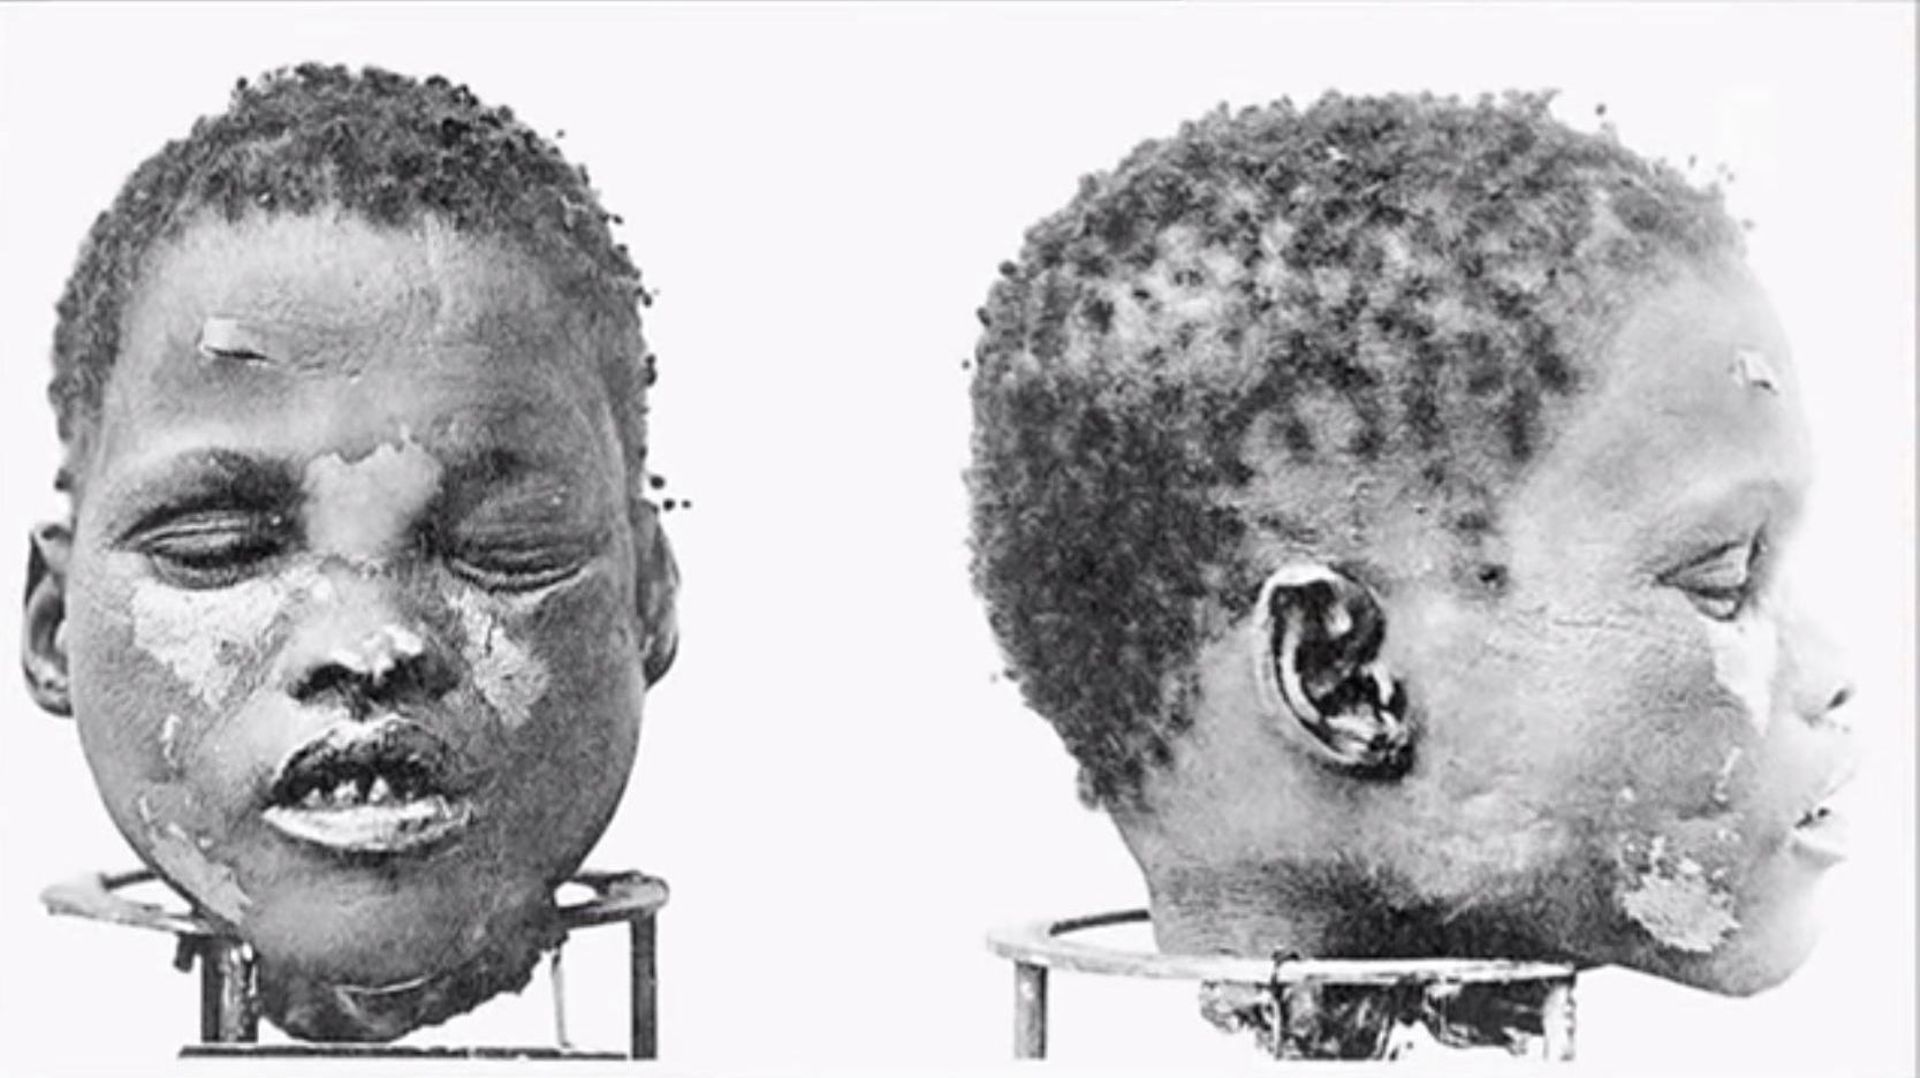 Un crâne de Herero, issu des massacres coloniaux allemands et utilisé ensuite par des laboratoires